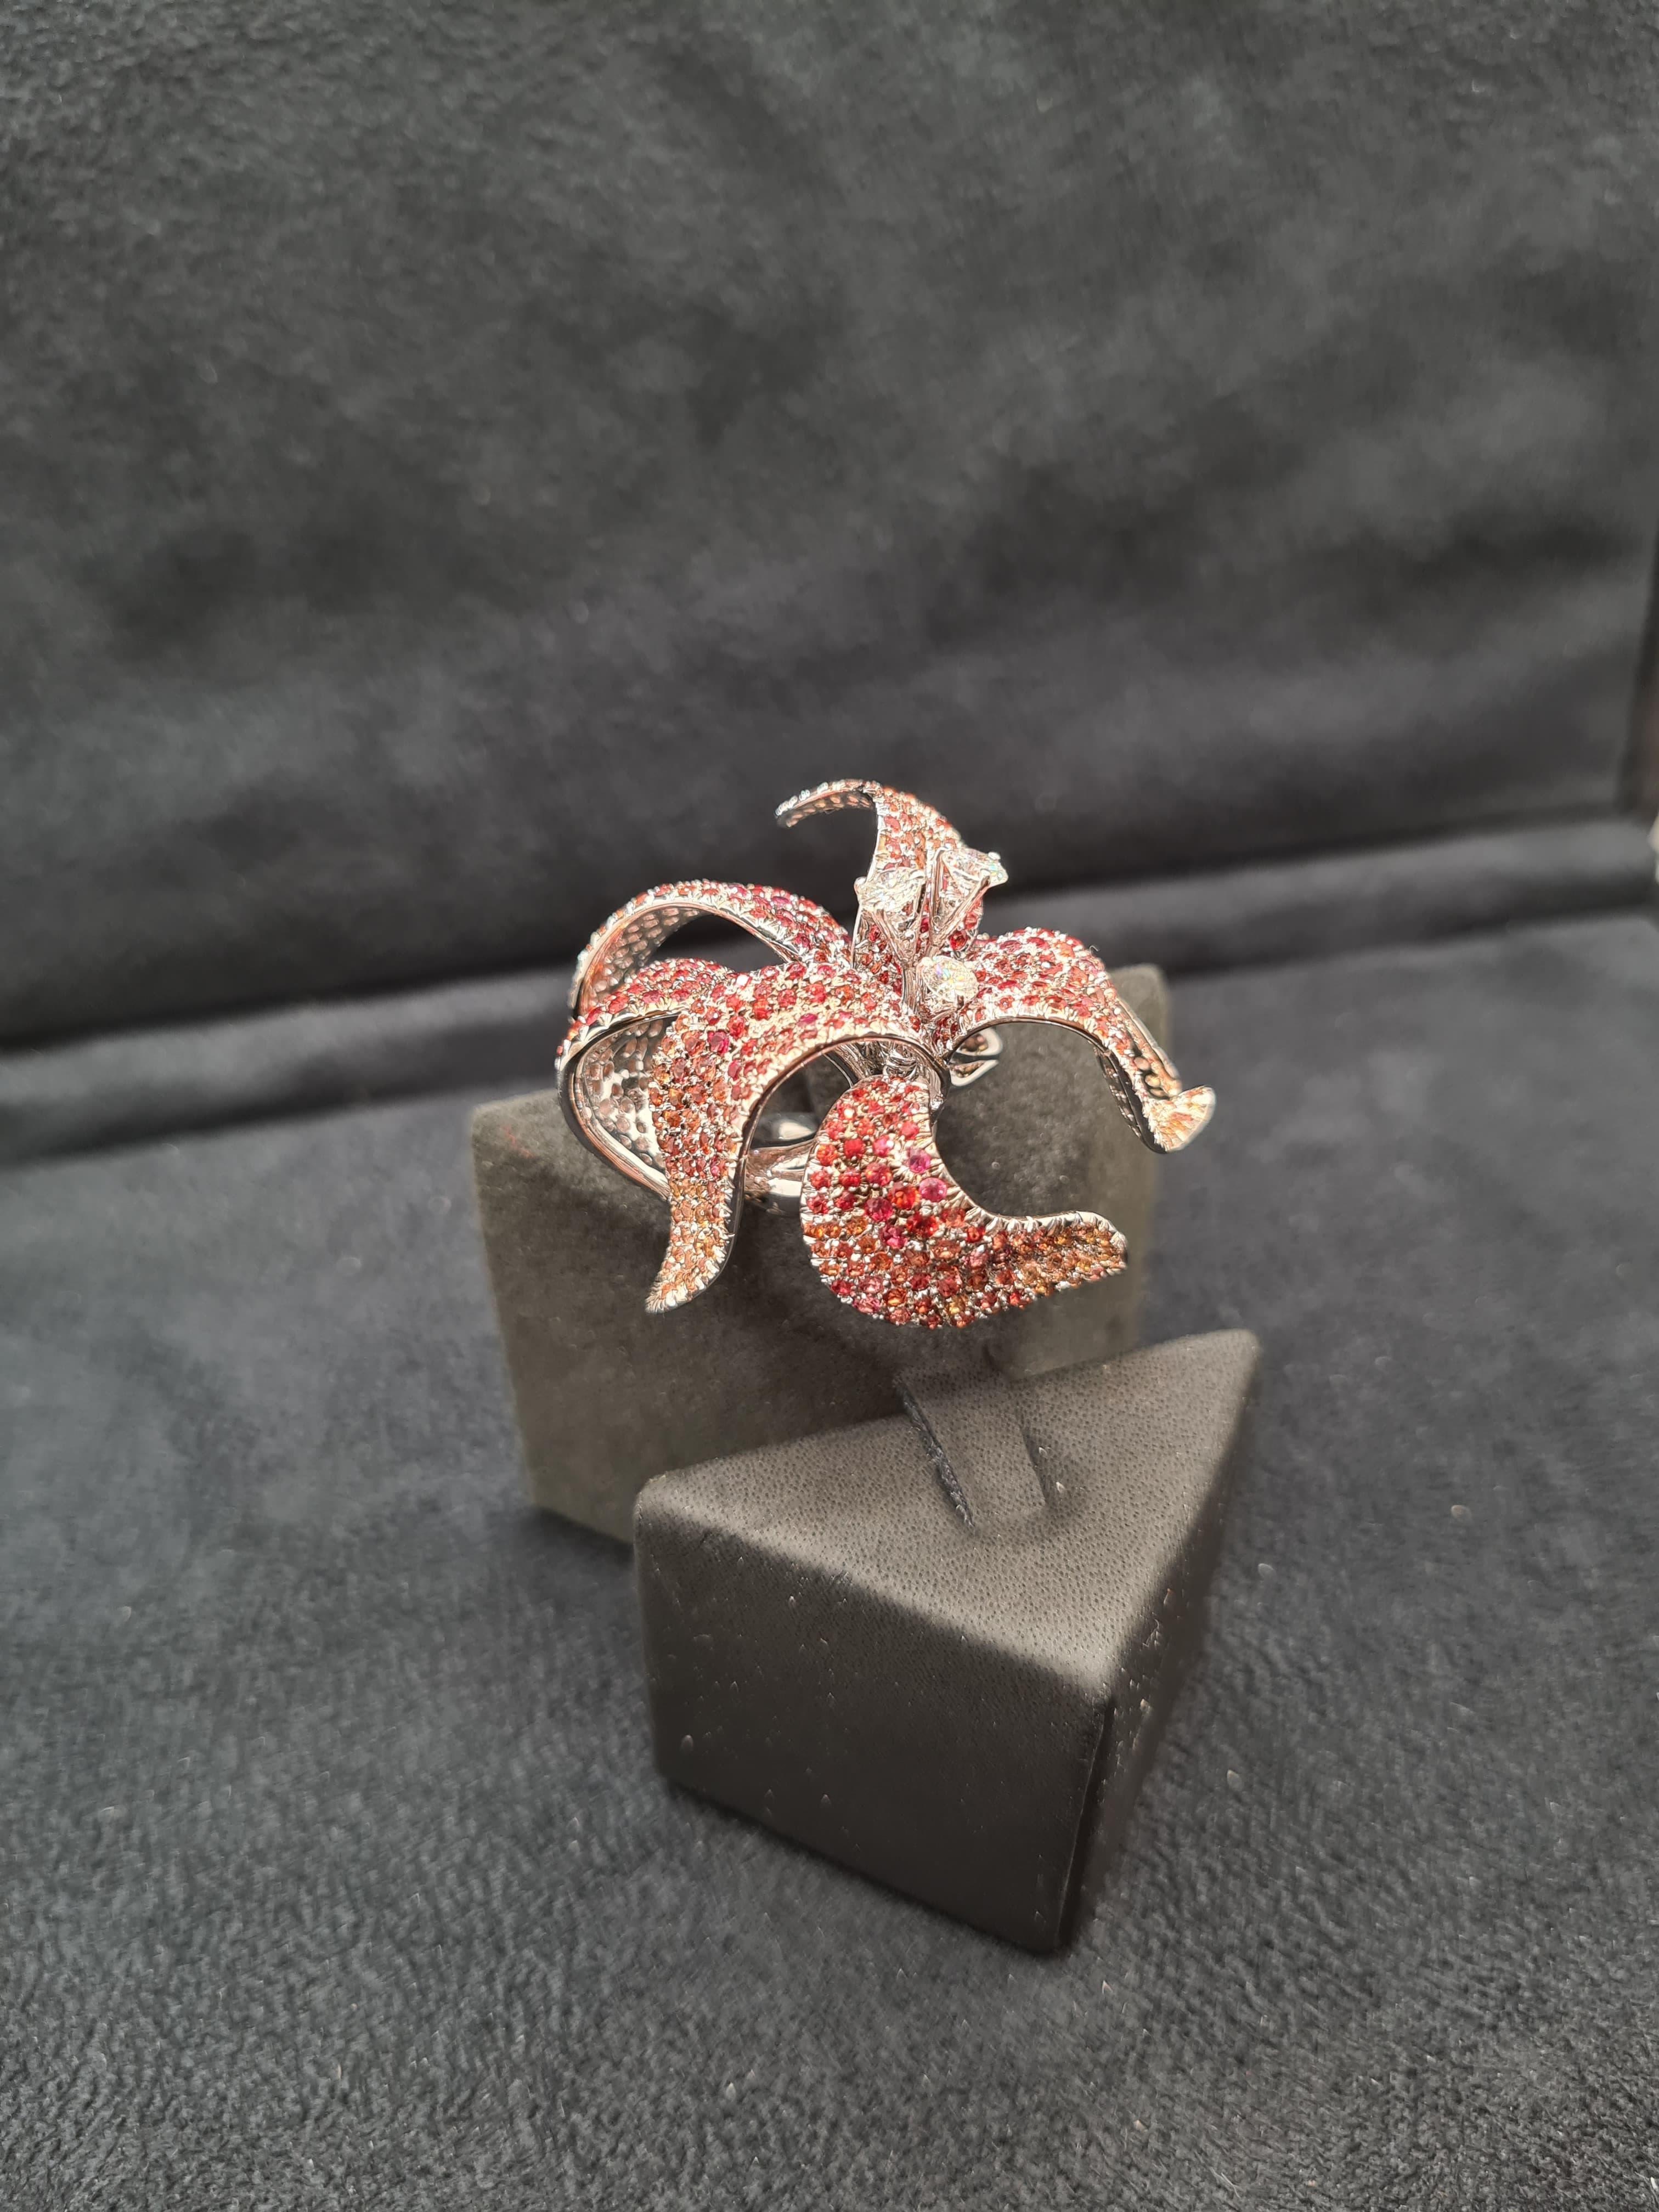 Wir stellen den faszinierenden HIBISCUS RING vor, ein schillerndes Beispiel für Eleganz und Lebendigkeit. Dieser aus Weißgold gefertigte Ring besticht durch runde Diamanten im Brillantschliff und orangefarbene Saphire, die in einem zarten